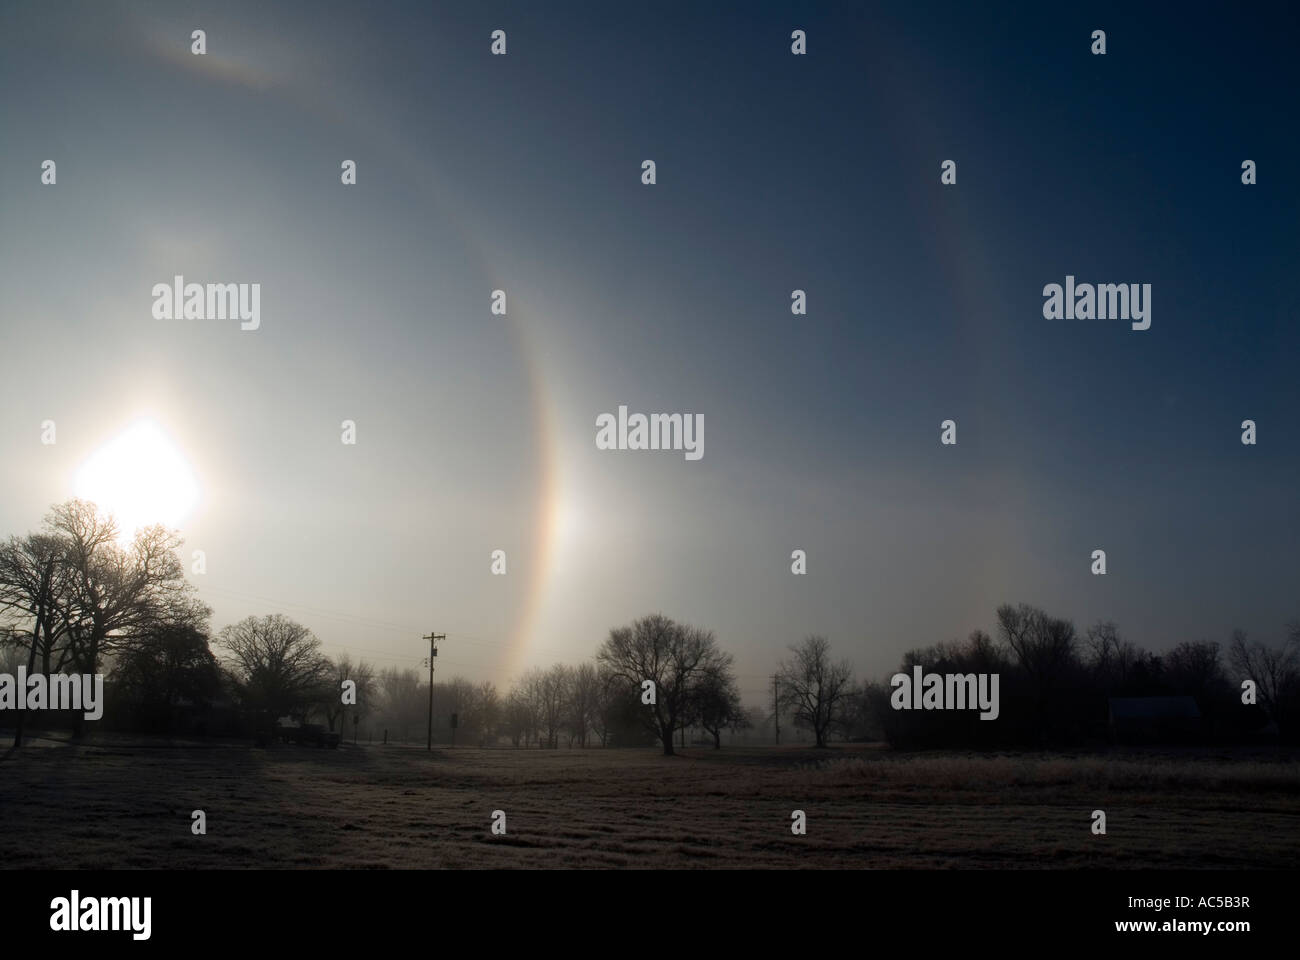 Sun Dog, nome scientifico, parhelion, un fenomeno meteorologico costituito da cristalli di ghiaccio, illumina il cielo del mattino. Oklahoma, Stati Uniti. Foto Stock